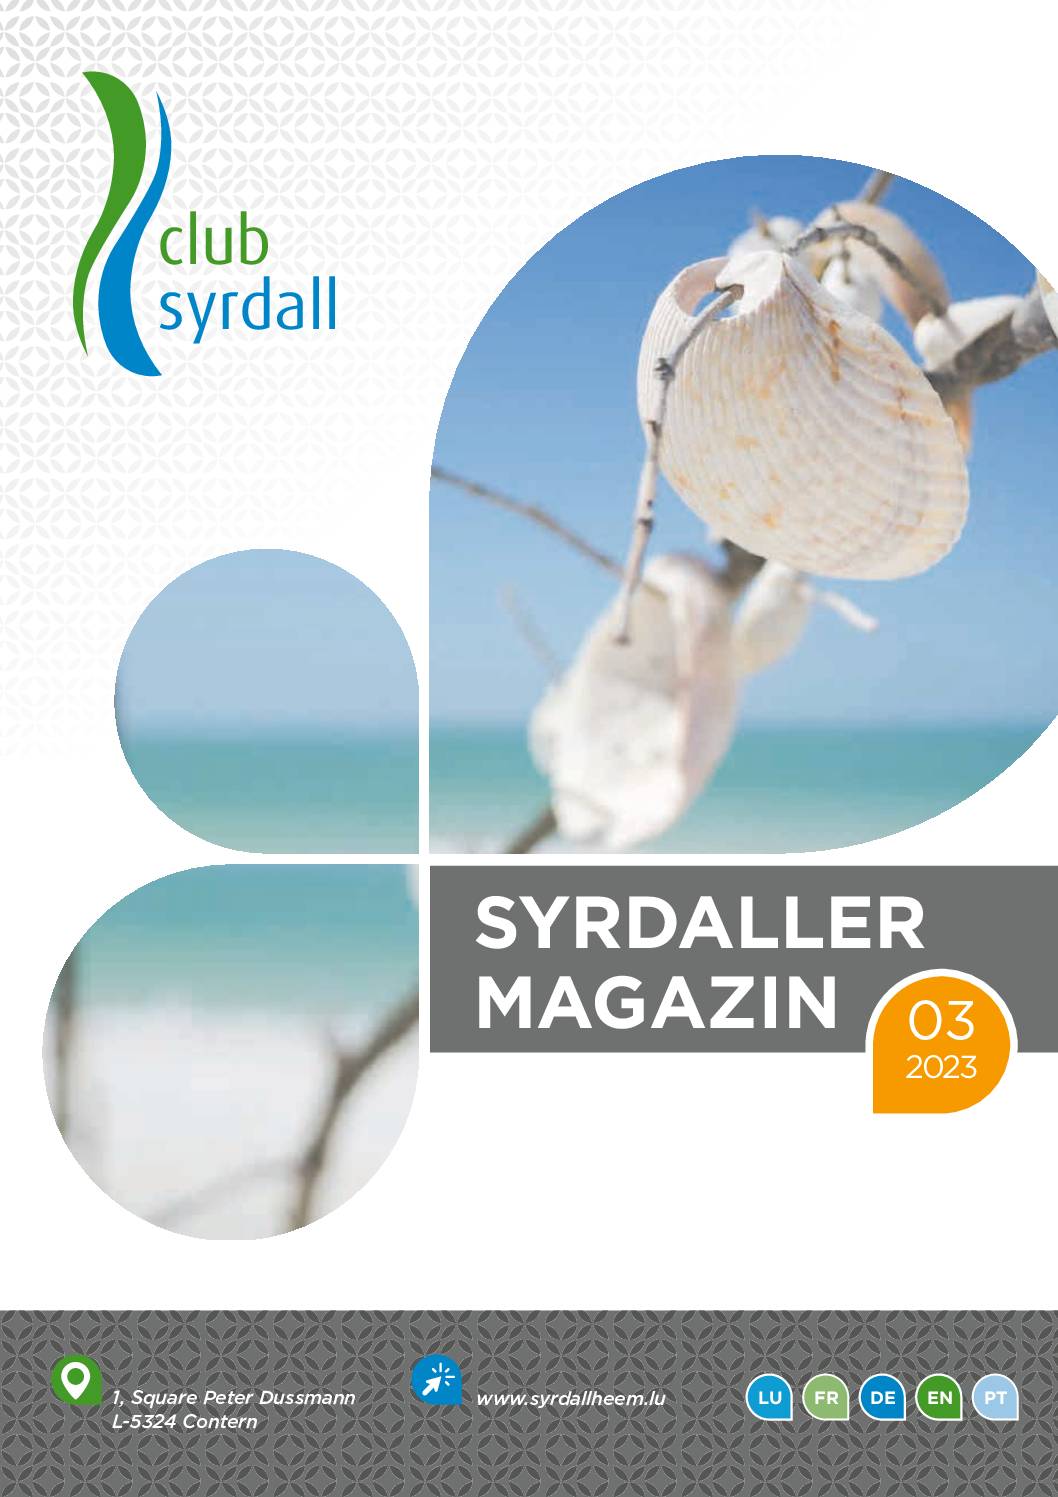 club syrdall Bro Syrdaller Magazin 032023 WEB 94241